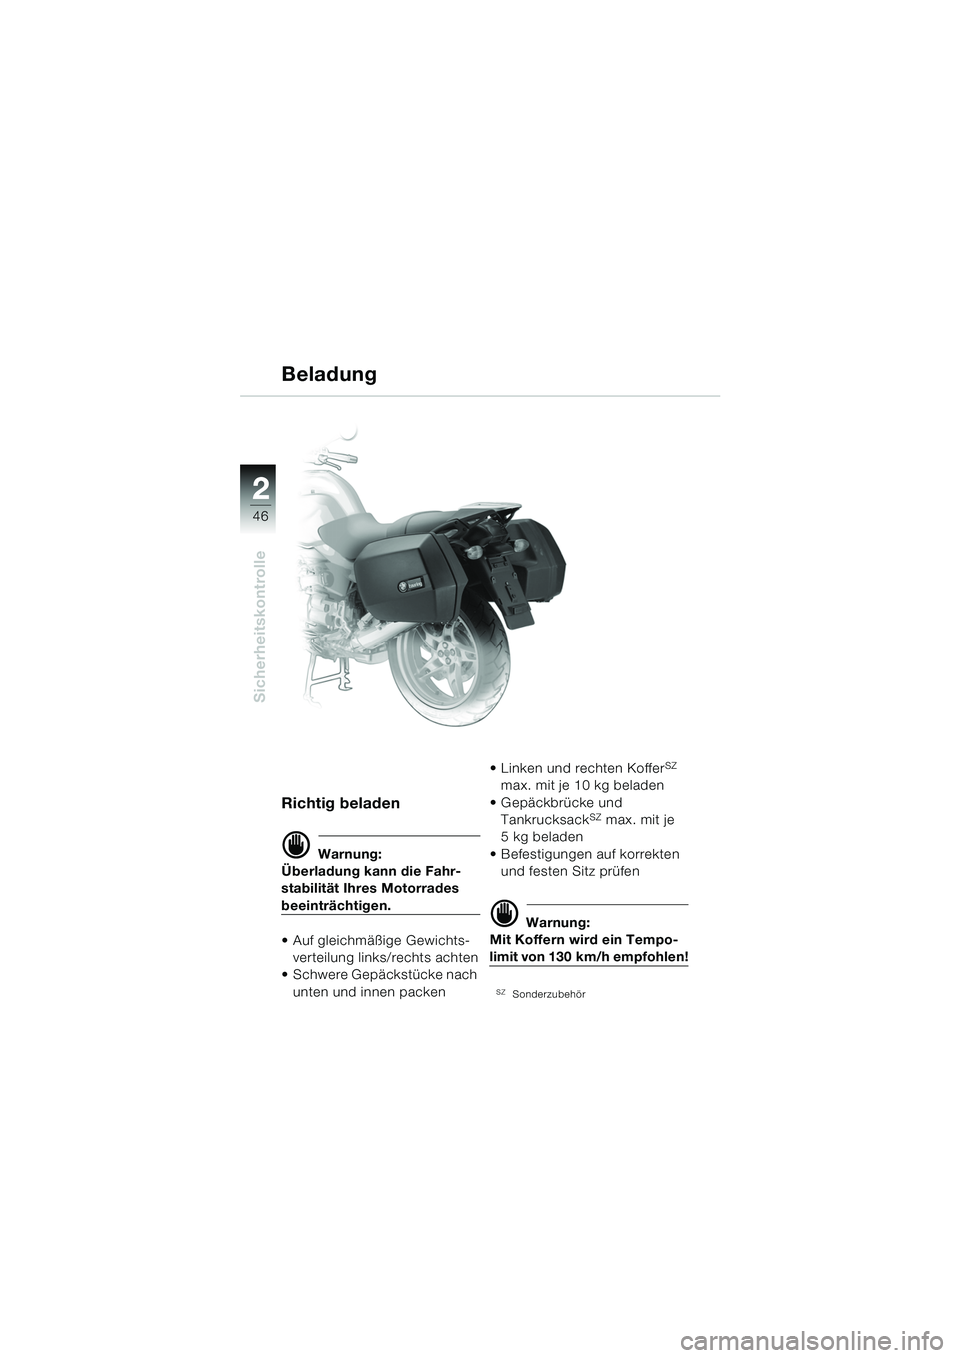 BMW MOTORRAD R 850 R 2004  Betriebsanleitung (in German) 22
46
Sicherheitskontrolle
Richtig beladen
d Warnung:
Überladung kann die Fahr-
stabilität Ihres Motorrades 
beeinträchtigen.
 Auf gleichmäßige Gewichts-
verteilung links/rechts achten
 Schwere